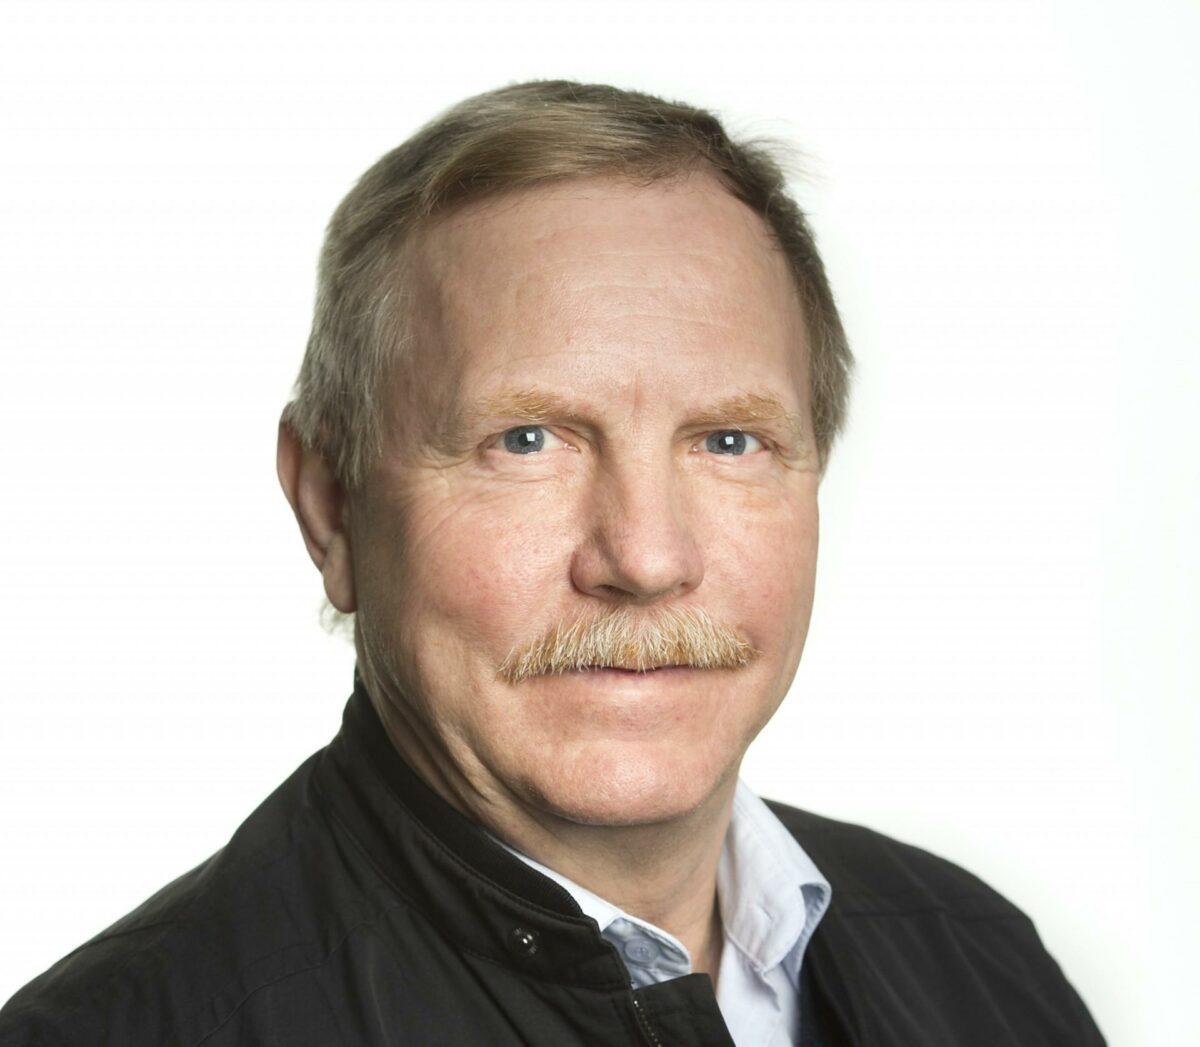 Jens Andersen er formand for lokalafdeling Nord i Arbejdsgiverne. Foto: Arbejdsgiverne.